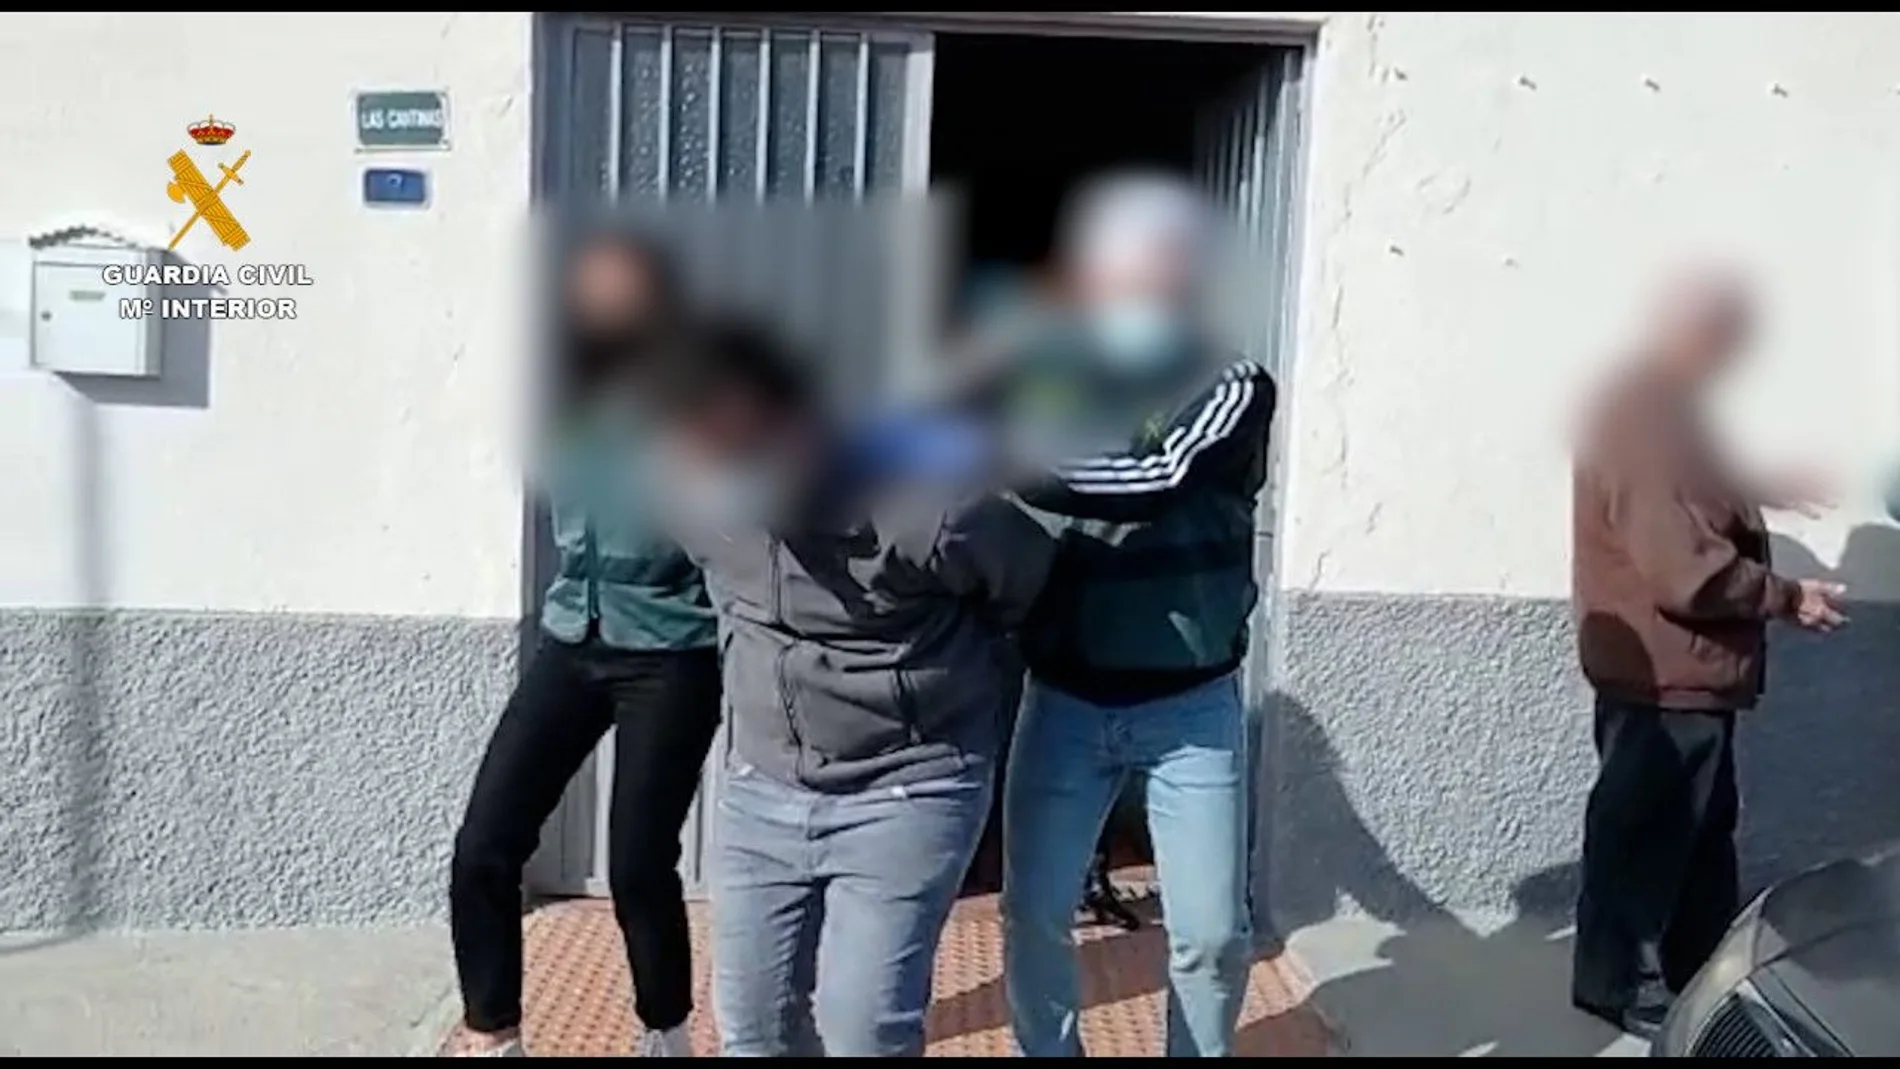 La Guardia Civil detuvo al individuo en Almería